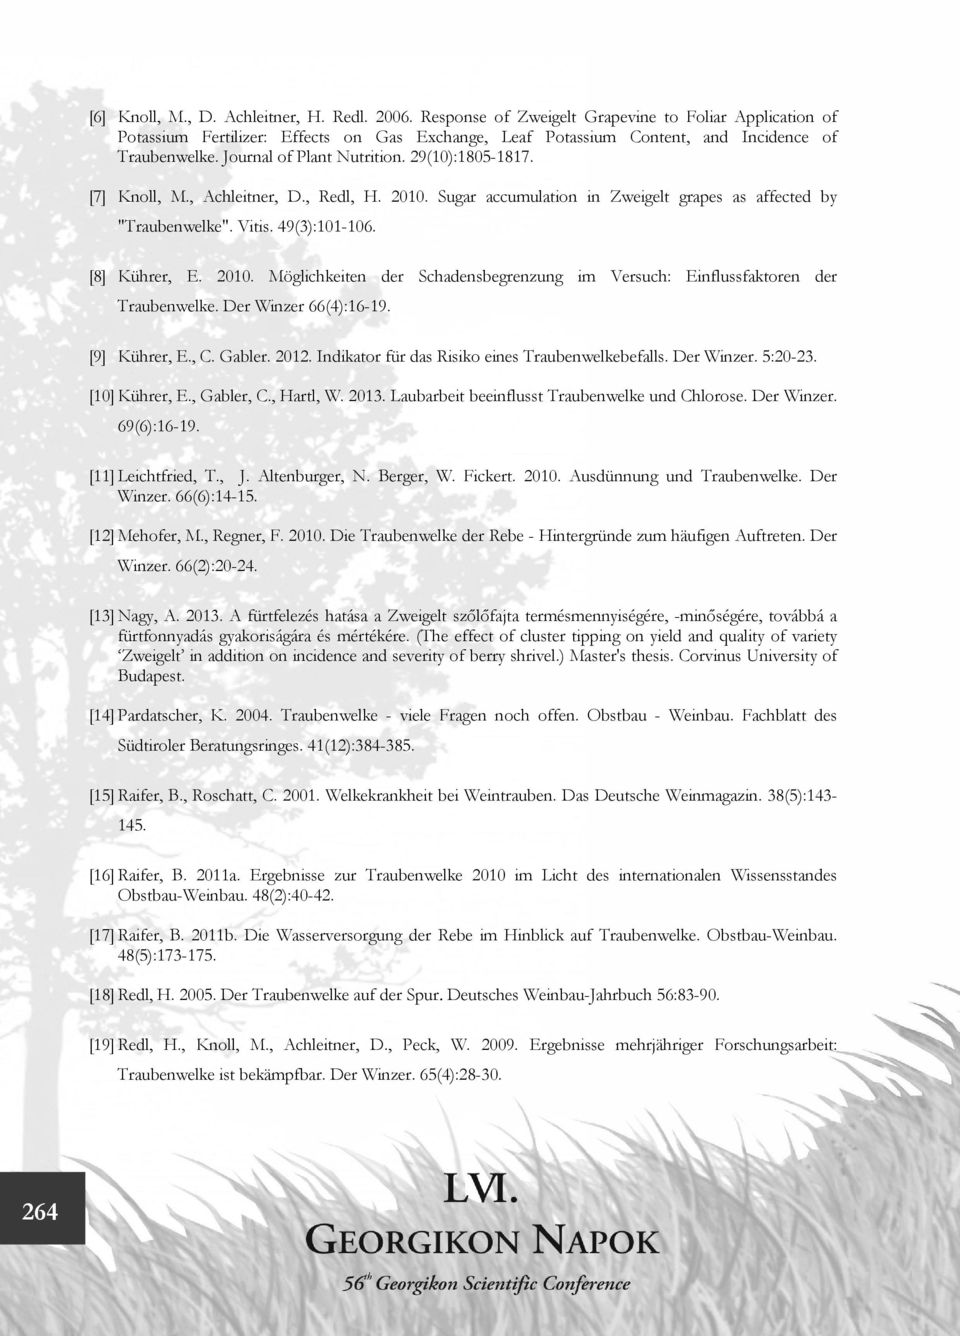 29(10):1805-1817. [7] Knoll, M., Achleitner, D., Redl, H. 2010. Sugar accumulation in Zweigelt grapes as affected by "Traubenwelke". Vitis. 49(3):101-106. [8] Kührer, E. 2010. Möglichkeiten der Schadensbegrenzung im Versuch: Einflussfaktoren der Traubenwelke.